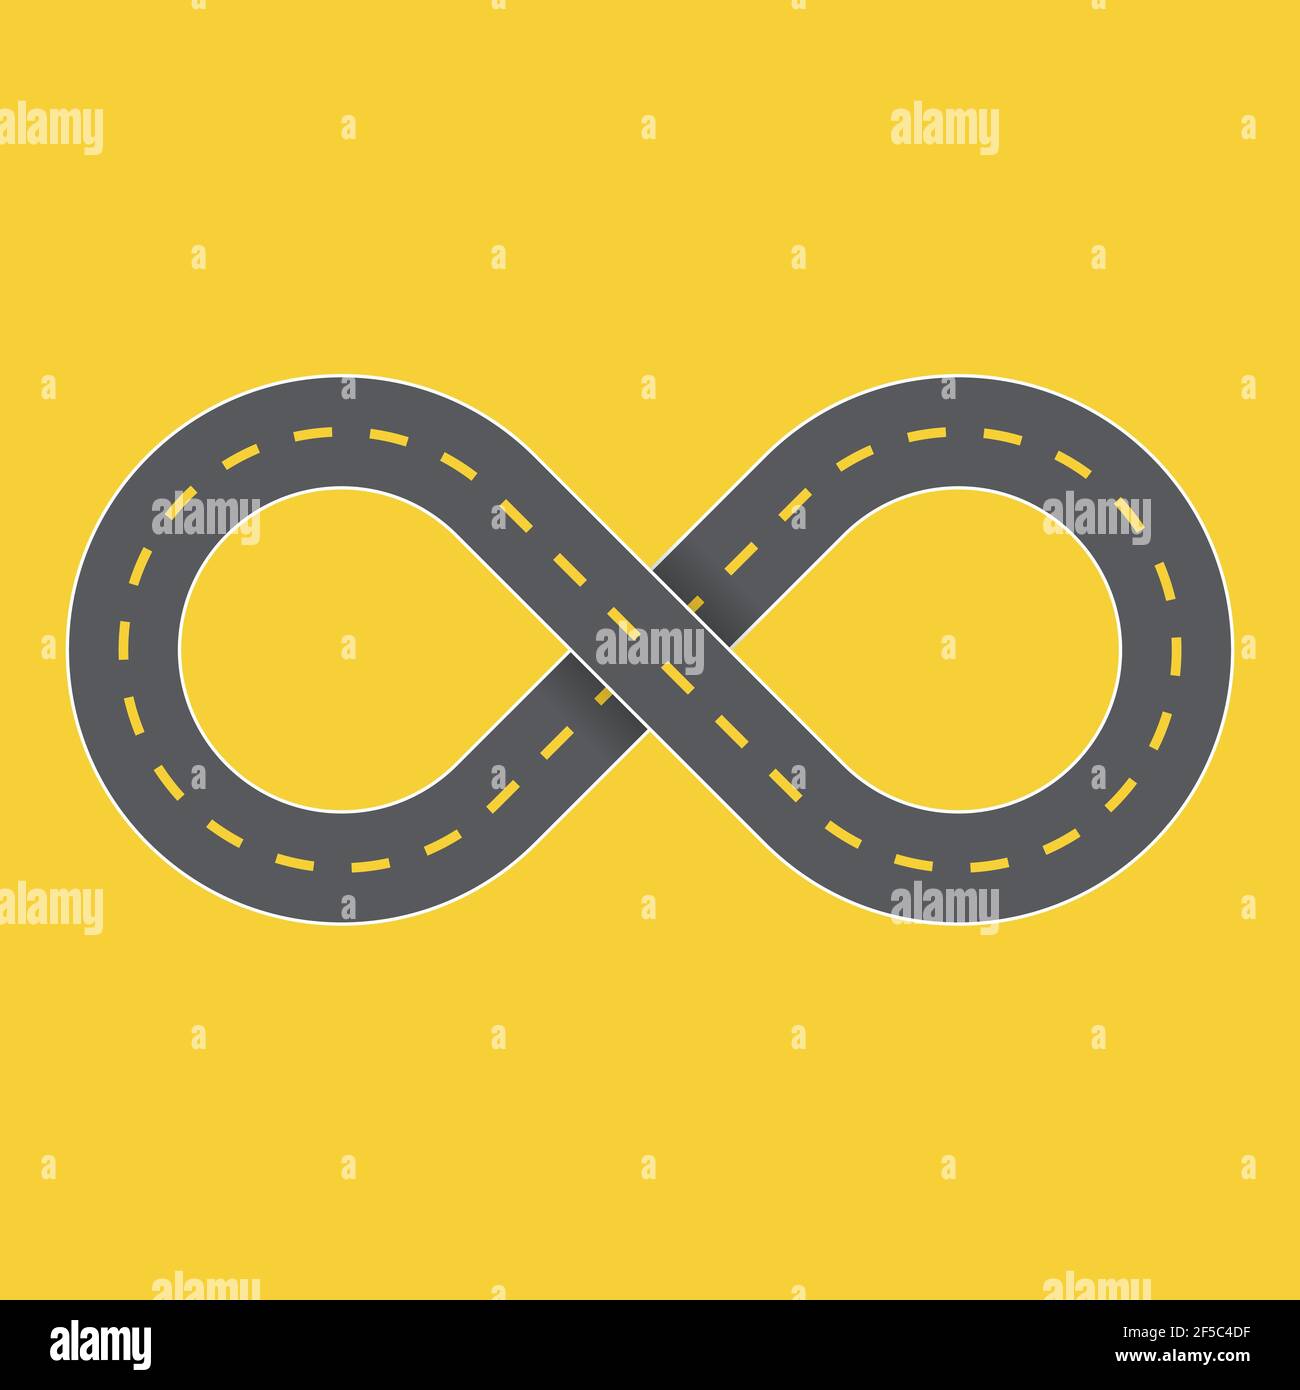 Grafico infinito simbolo autostrada. Illustrazione vettoriale di una strada che non termina mai con il simbolo infinito Illustrazione Vettoriale